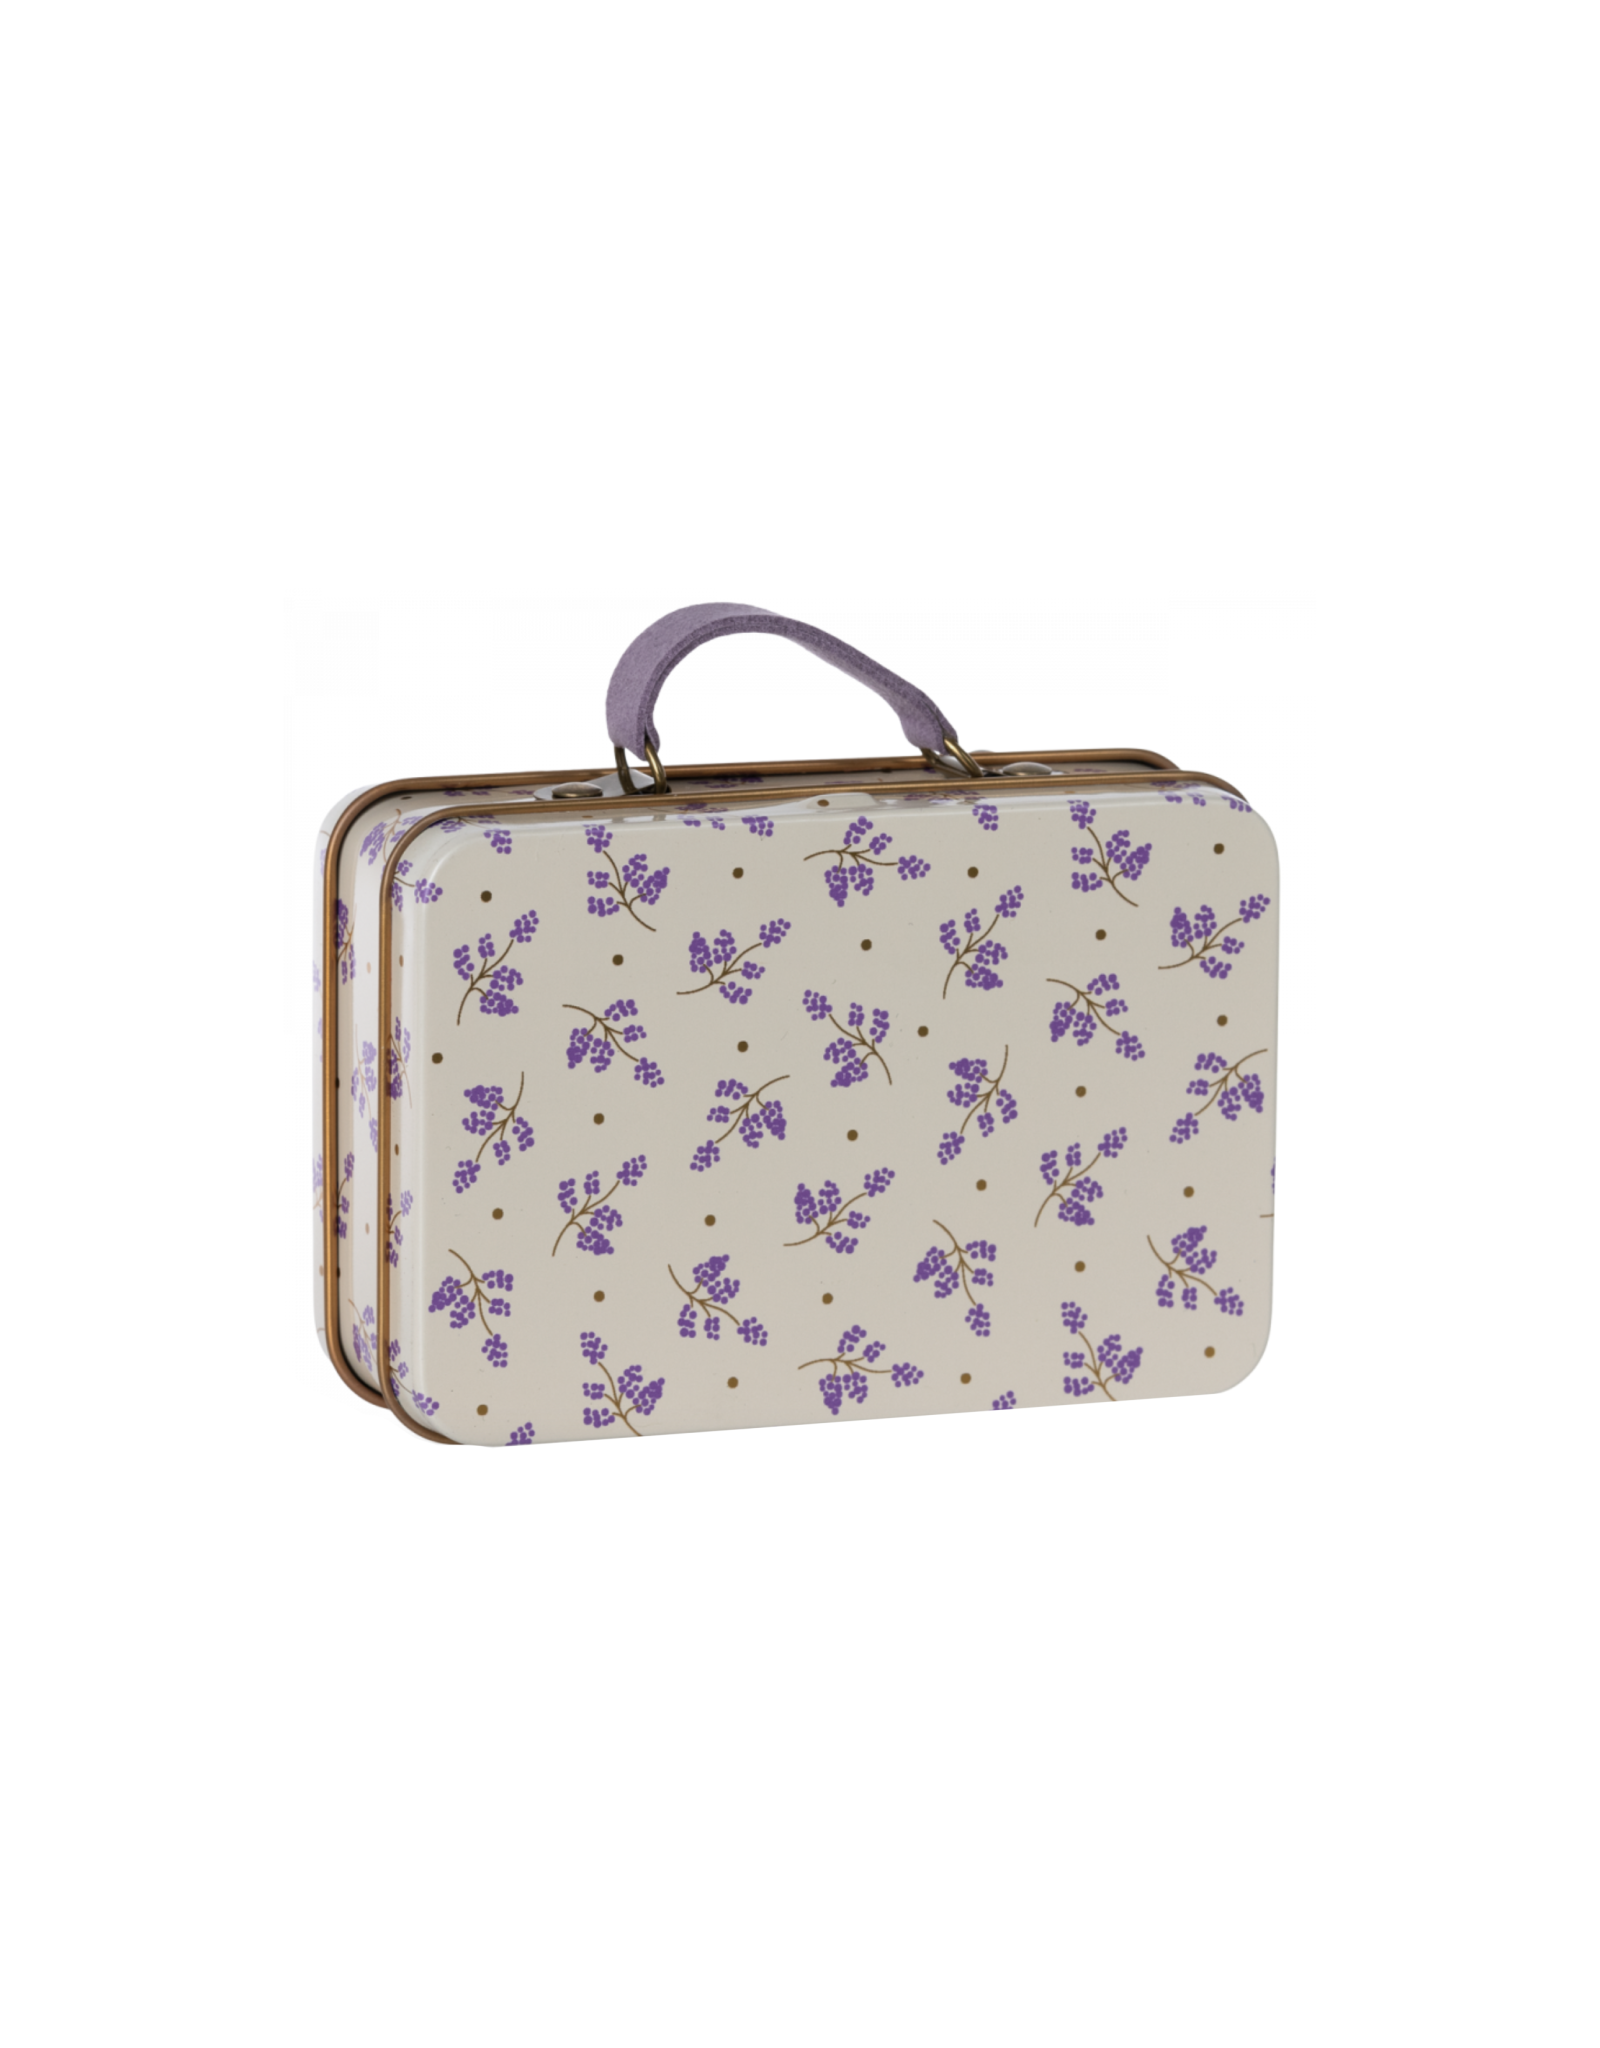 Maileg Small Madeleine Suitcase - Lavender